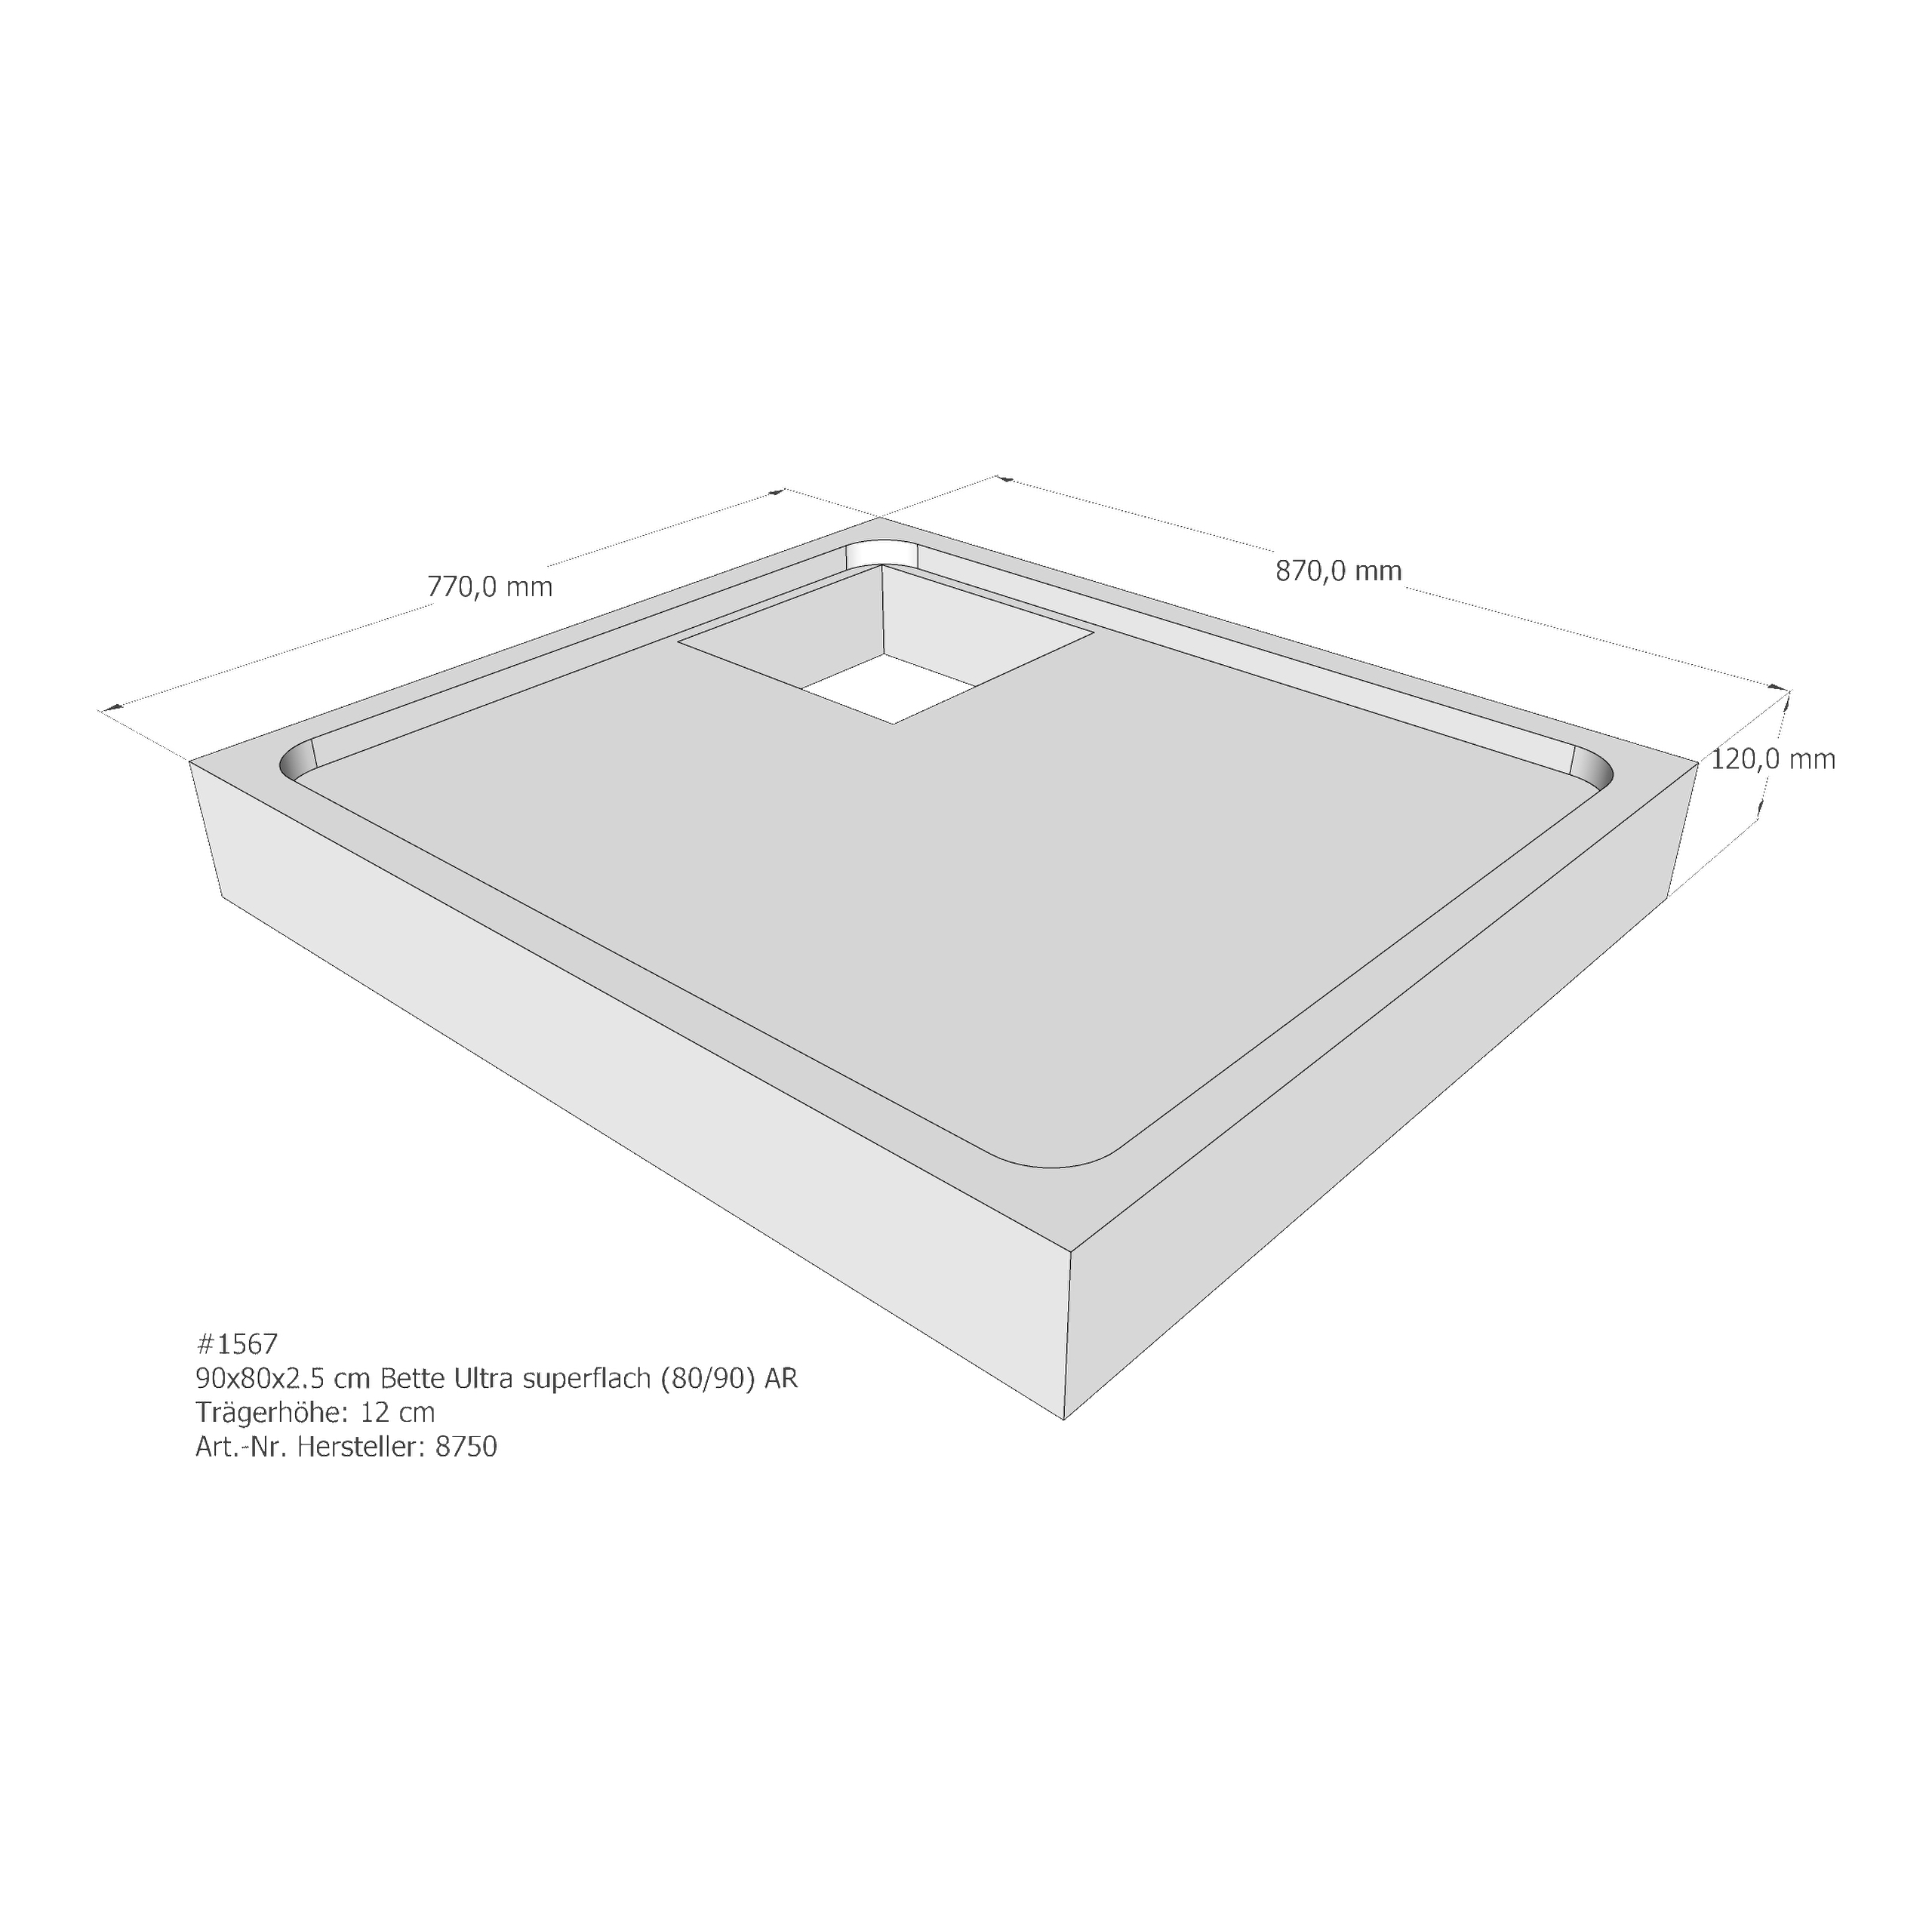 Duschwannenträger Bette BetteUltra (superflach) 90x80x2,5 cm AR210